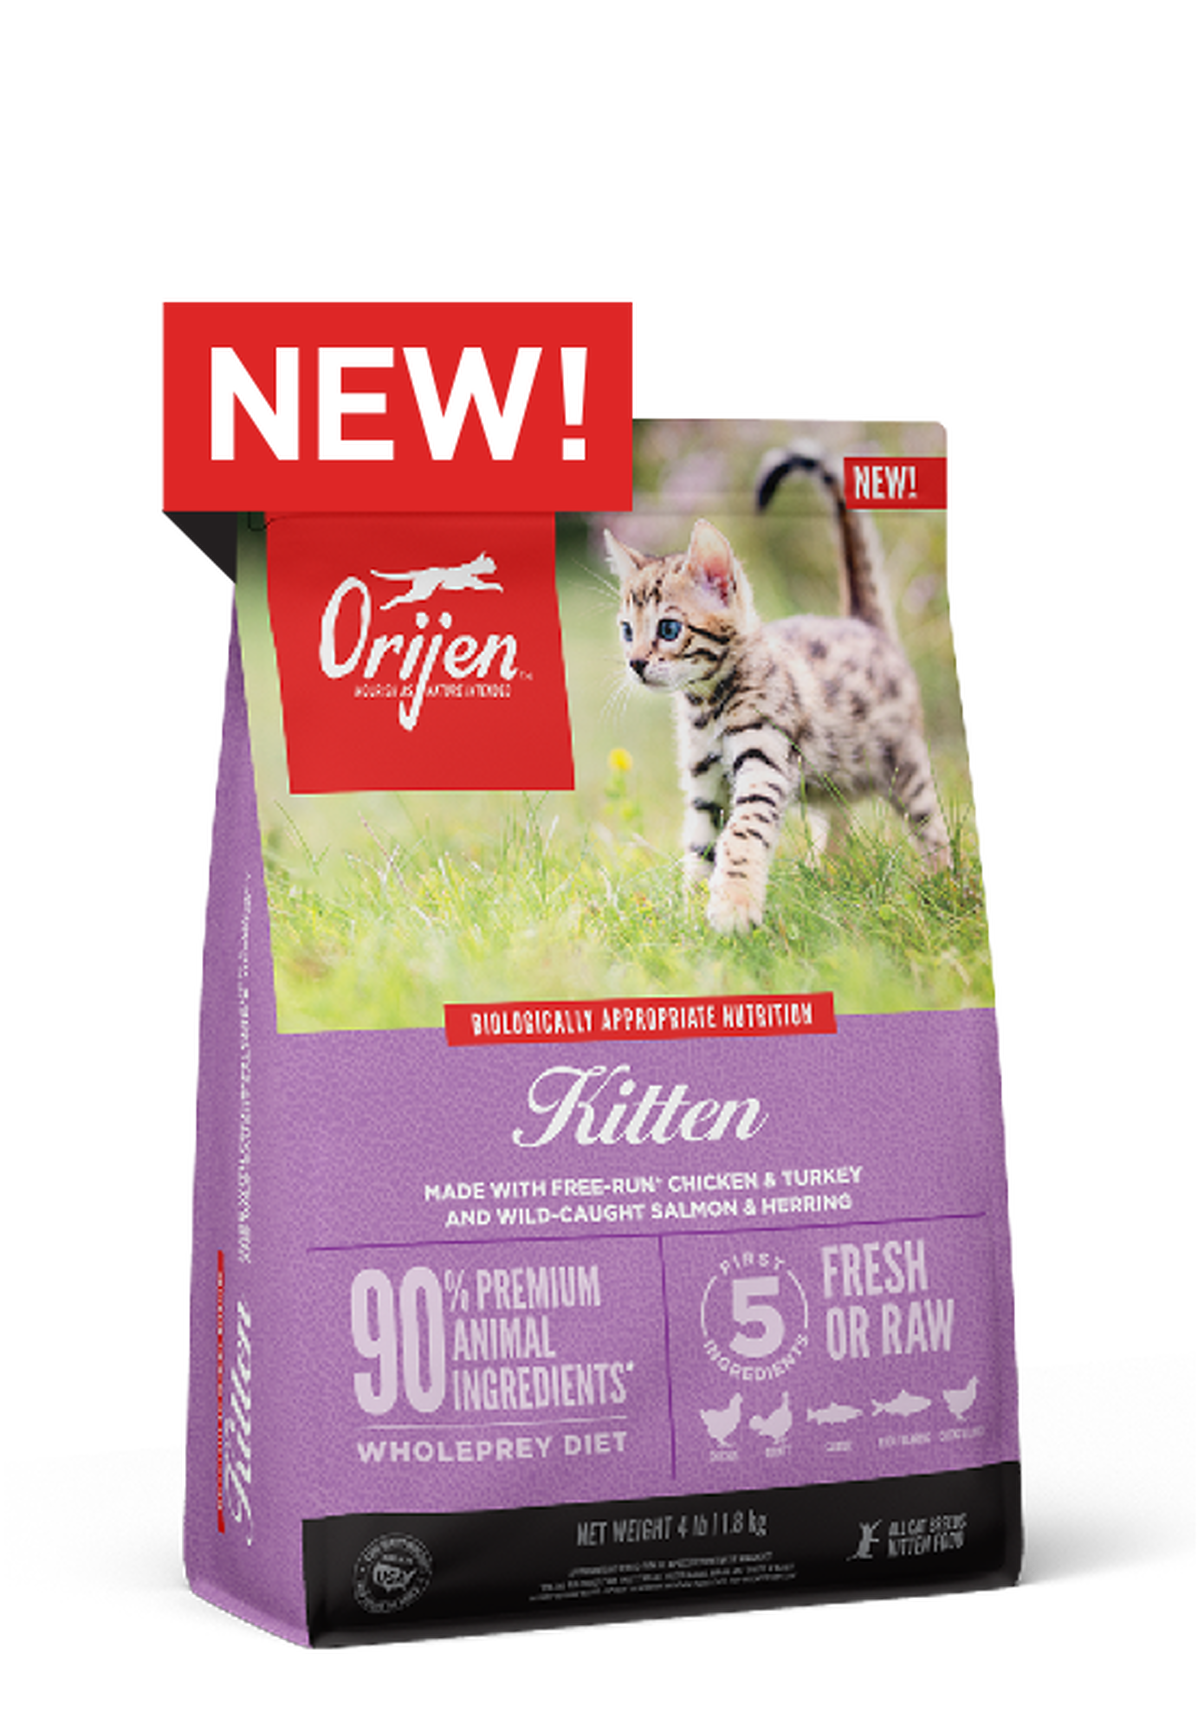 Orijen Dry Food Kitten Formula